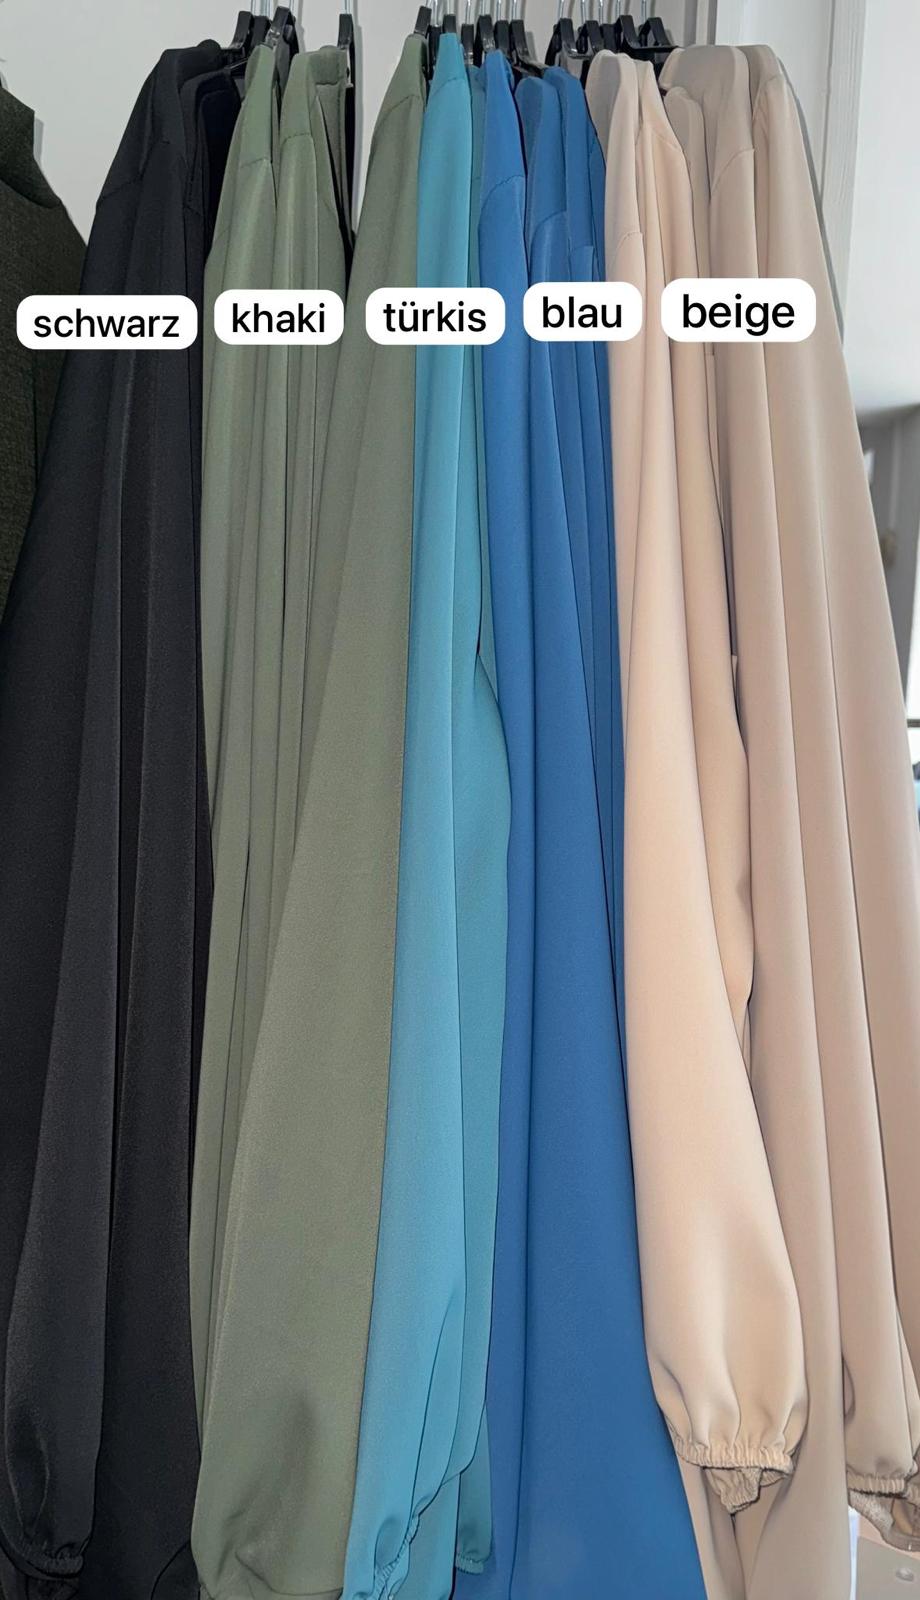 Abaya mit Puffärmeln - leichtes Material